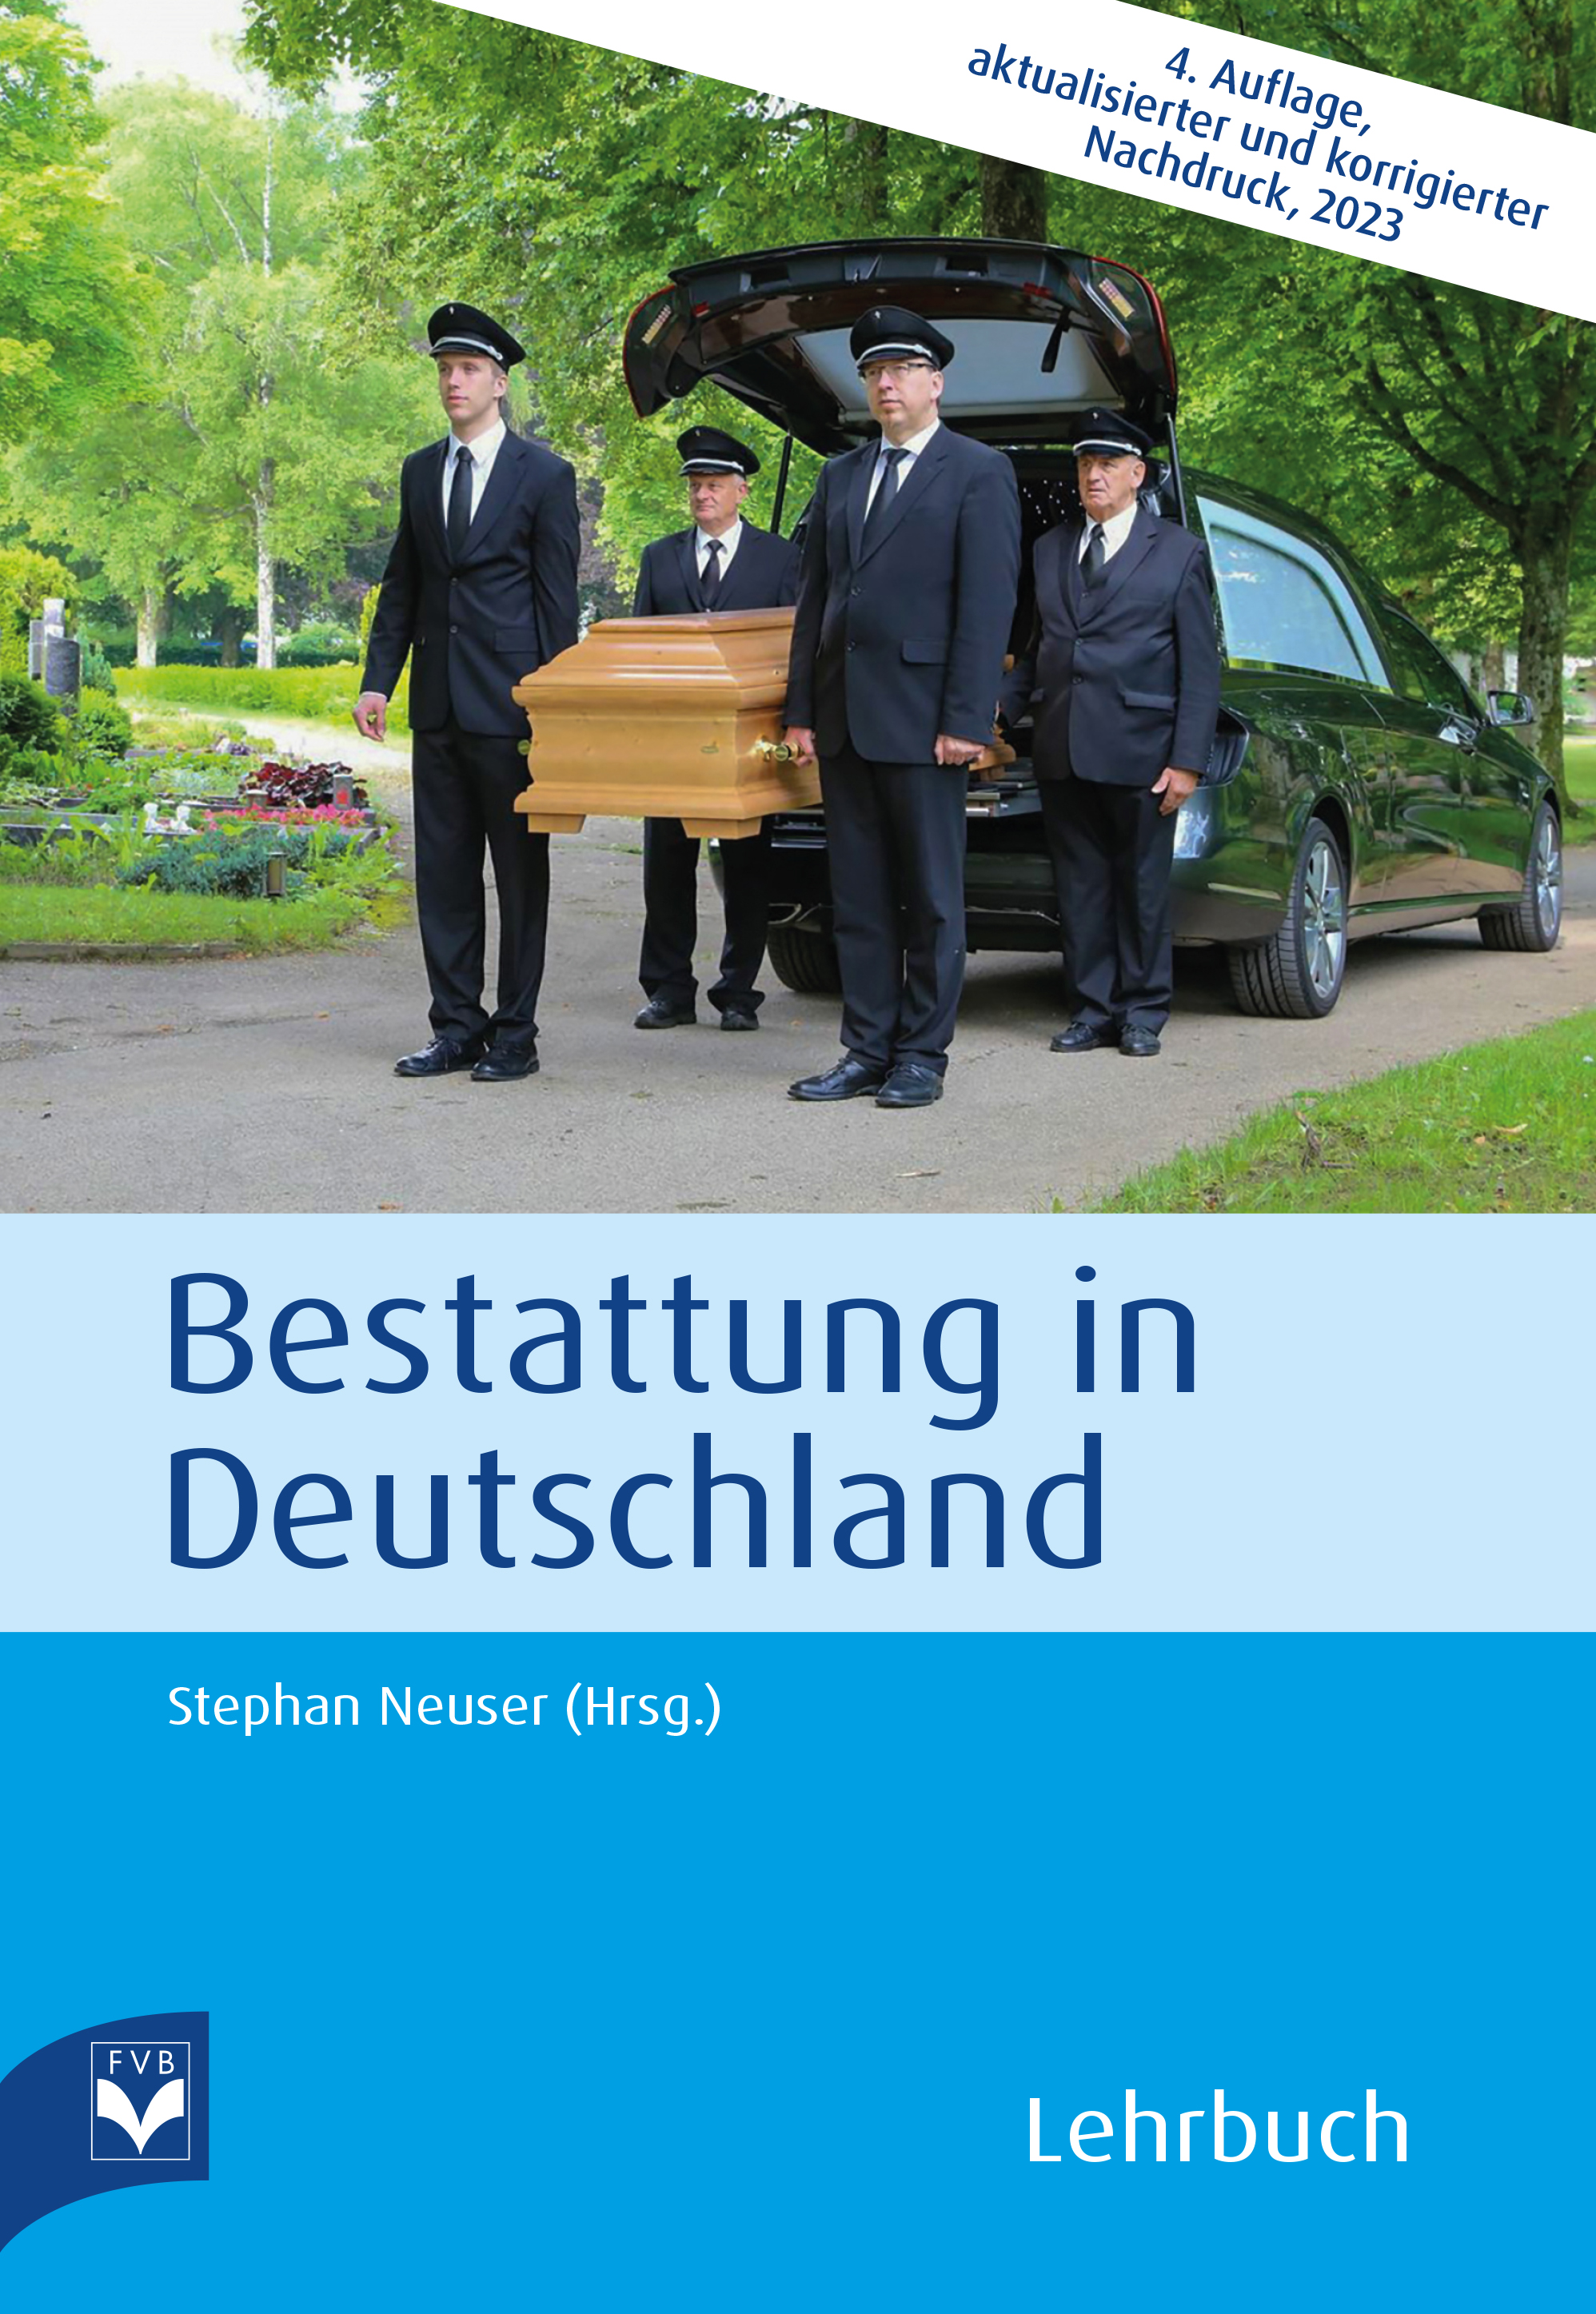 Bestattung in Deutschland – Lehrbuch  DIGITAL